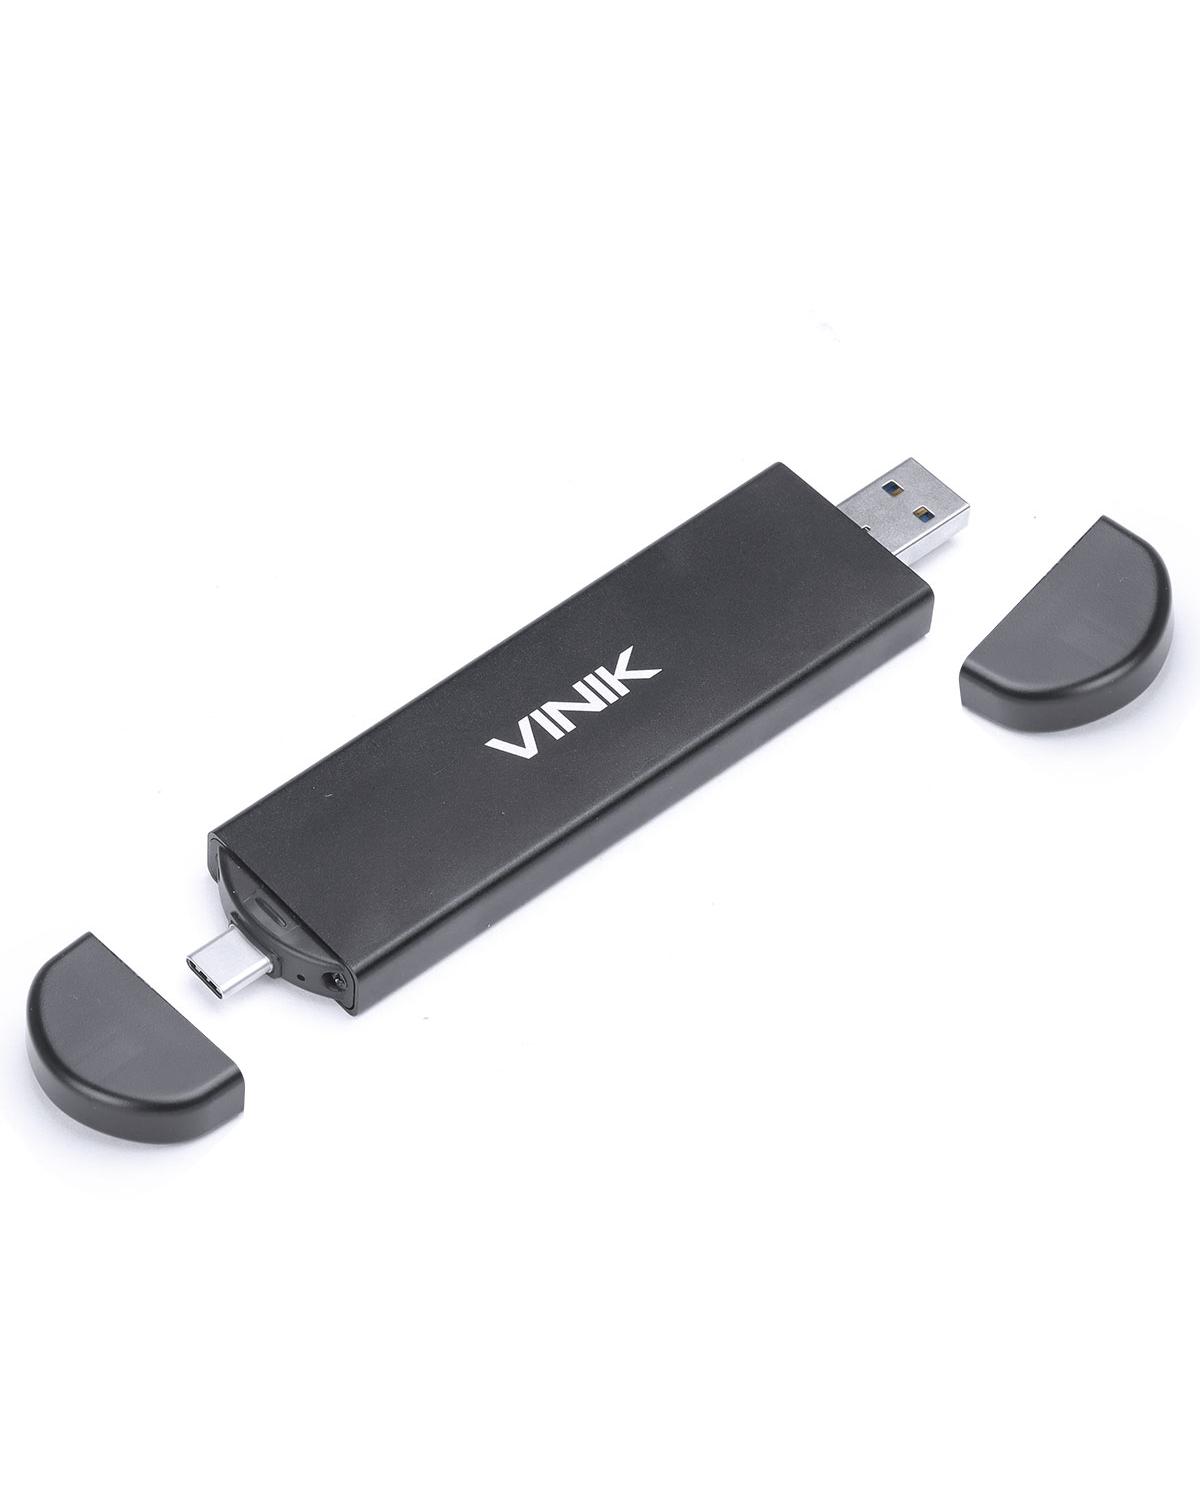 CASE PARA SSD M.2 COM CONEXÃO DUPLA USB A E USB TIPO C / TYPE C ALUMINIO - CSM2-USBAC